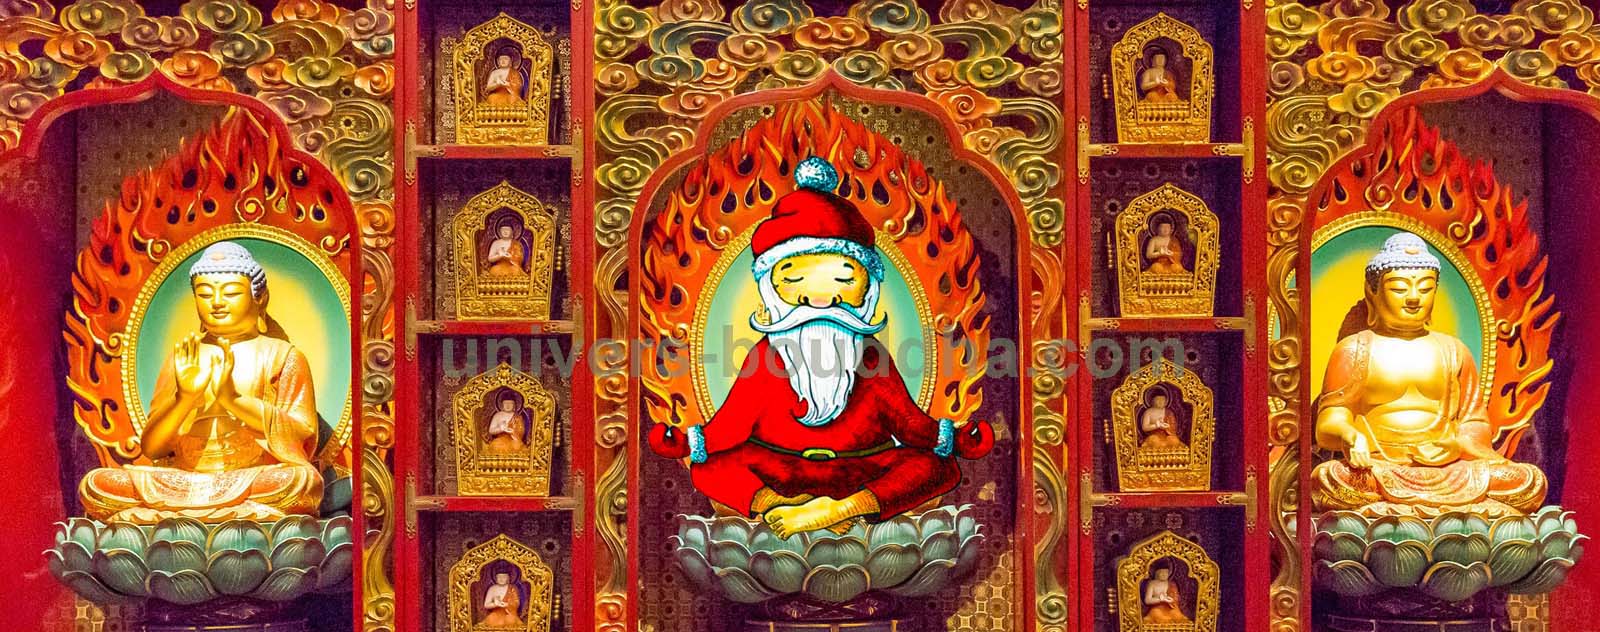 Les Bouddhistes fêtent ils Noël ?